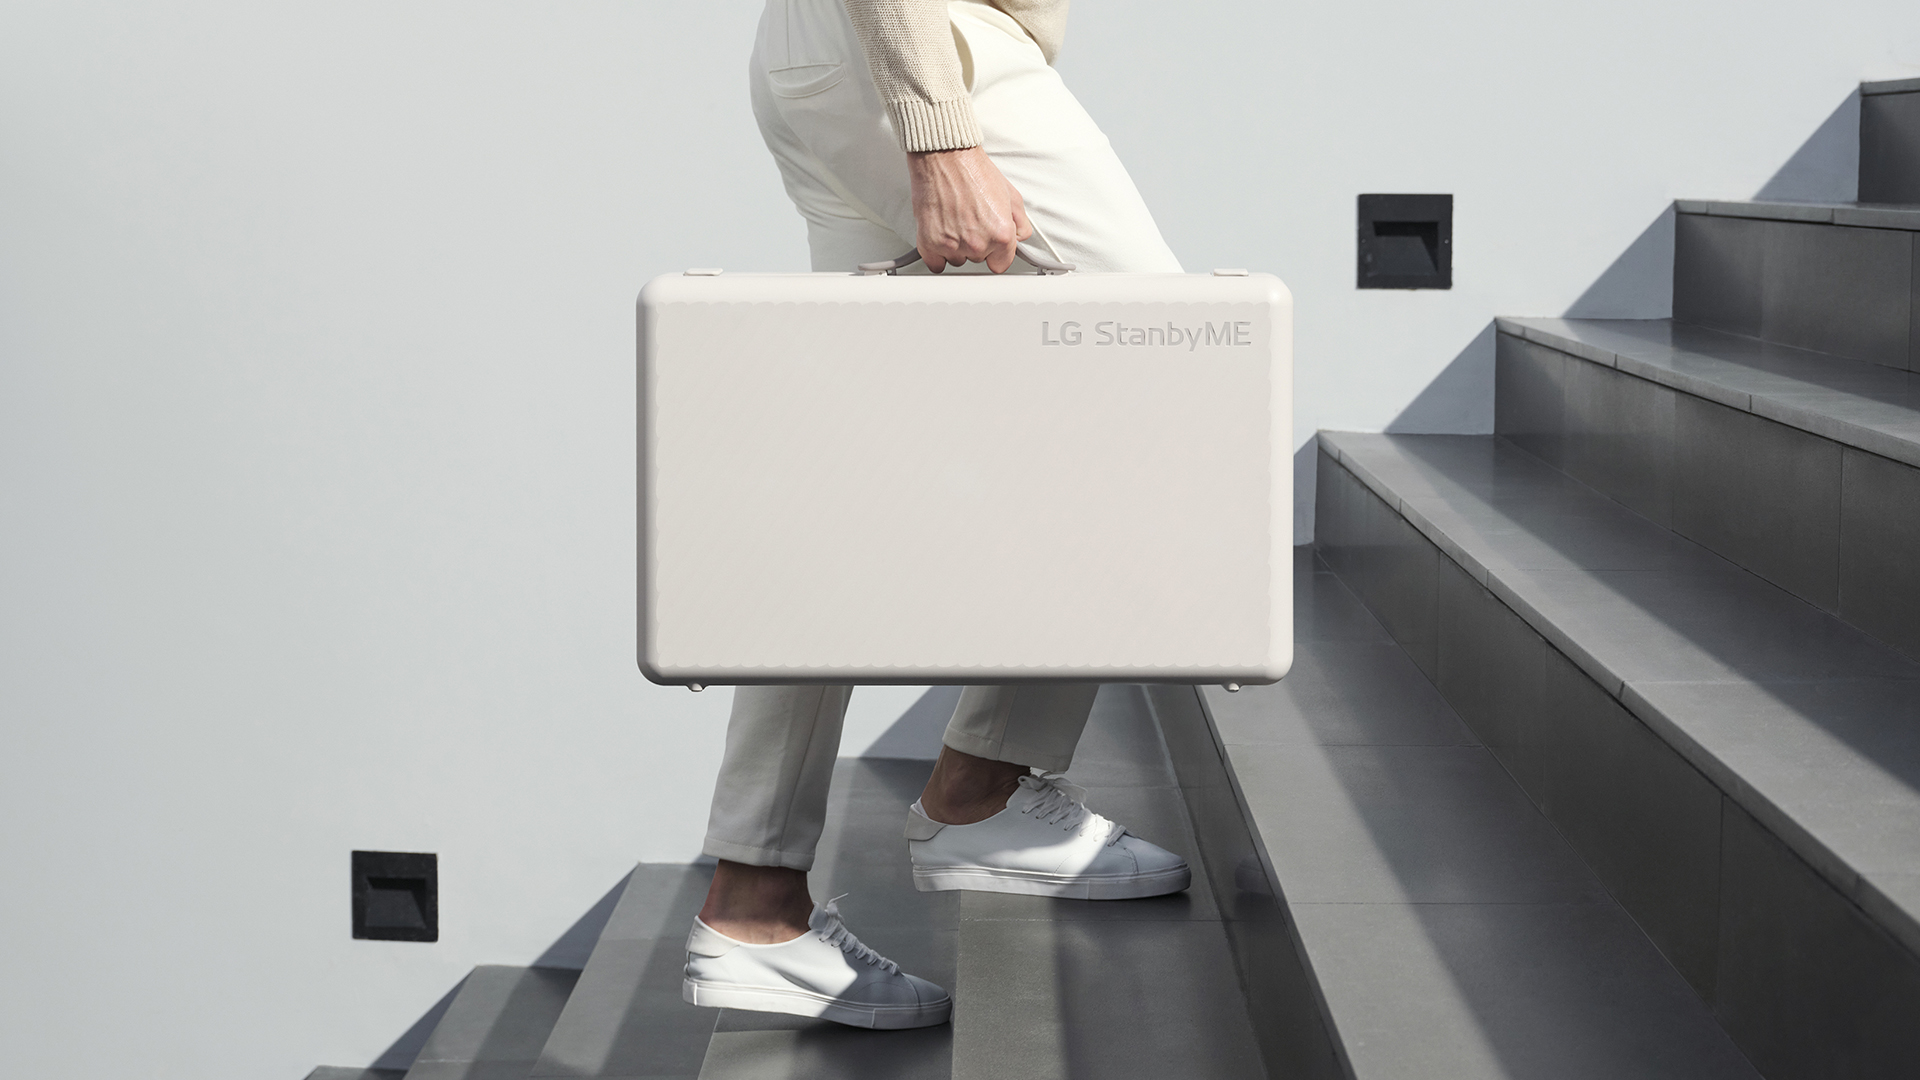 LG ra mắt thiết bị giải trí di động StanbyME Go với hình dáng như chiếc vali - Ảnh 3.